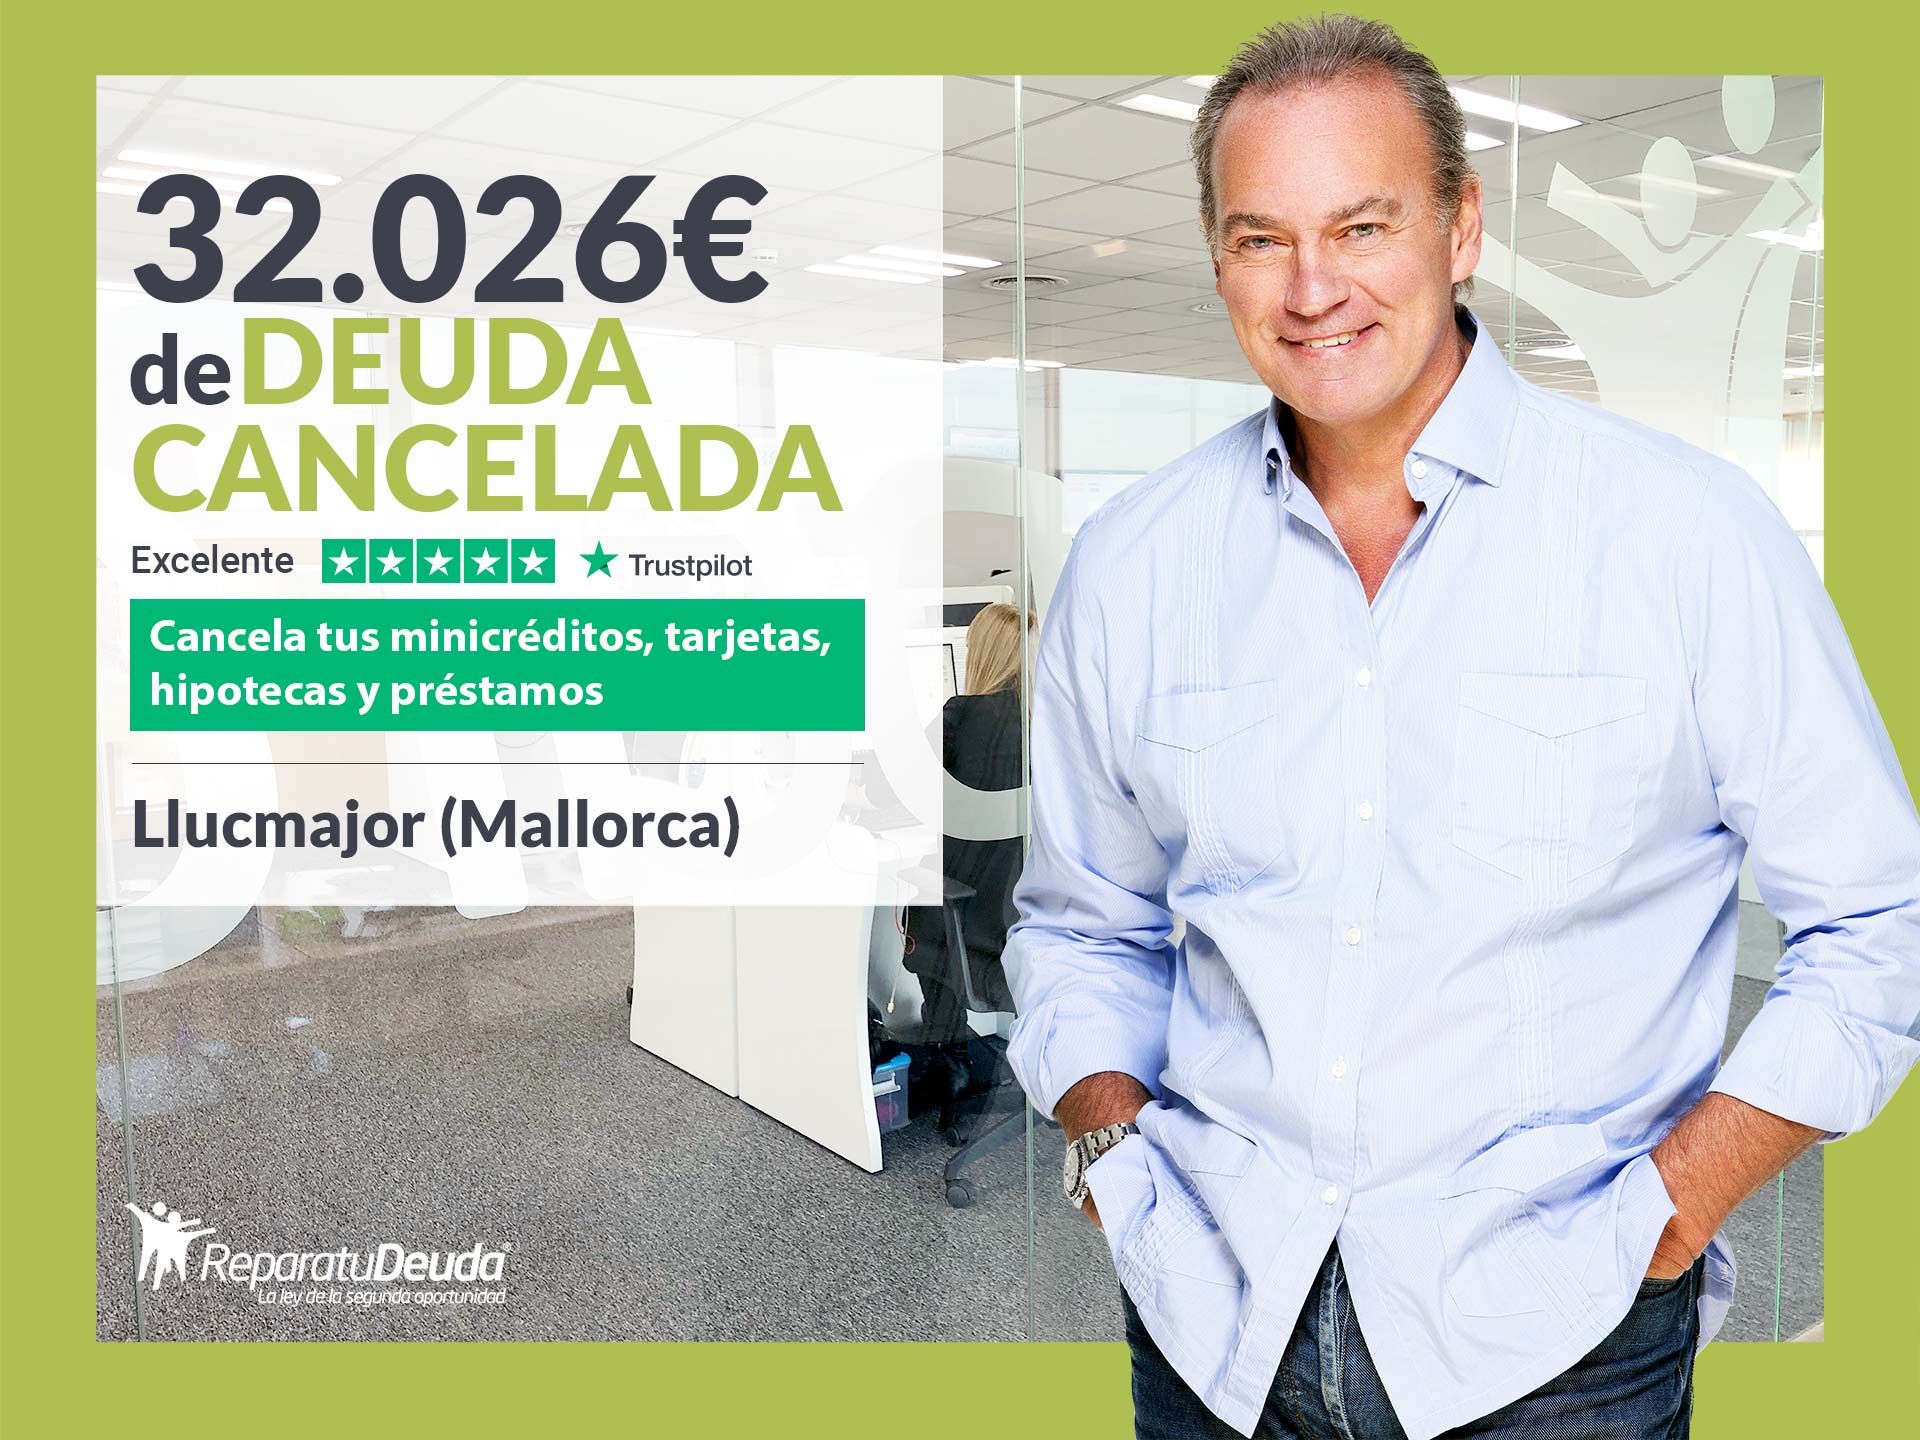 Repara tu Deuda Abogados cancela 32.026? en Llucmajor (Mallorca) con la Ley de Segunda Oportunidad